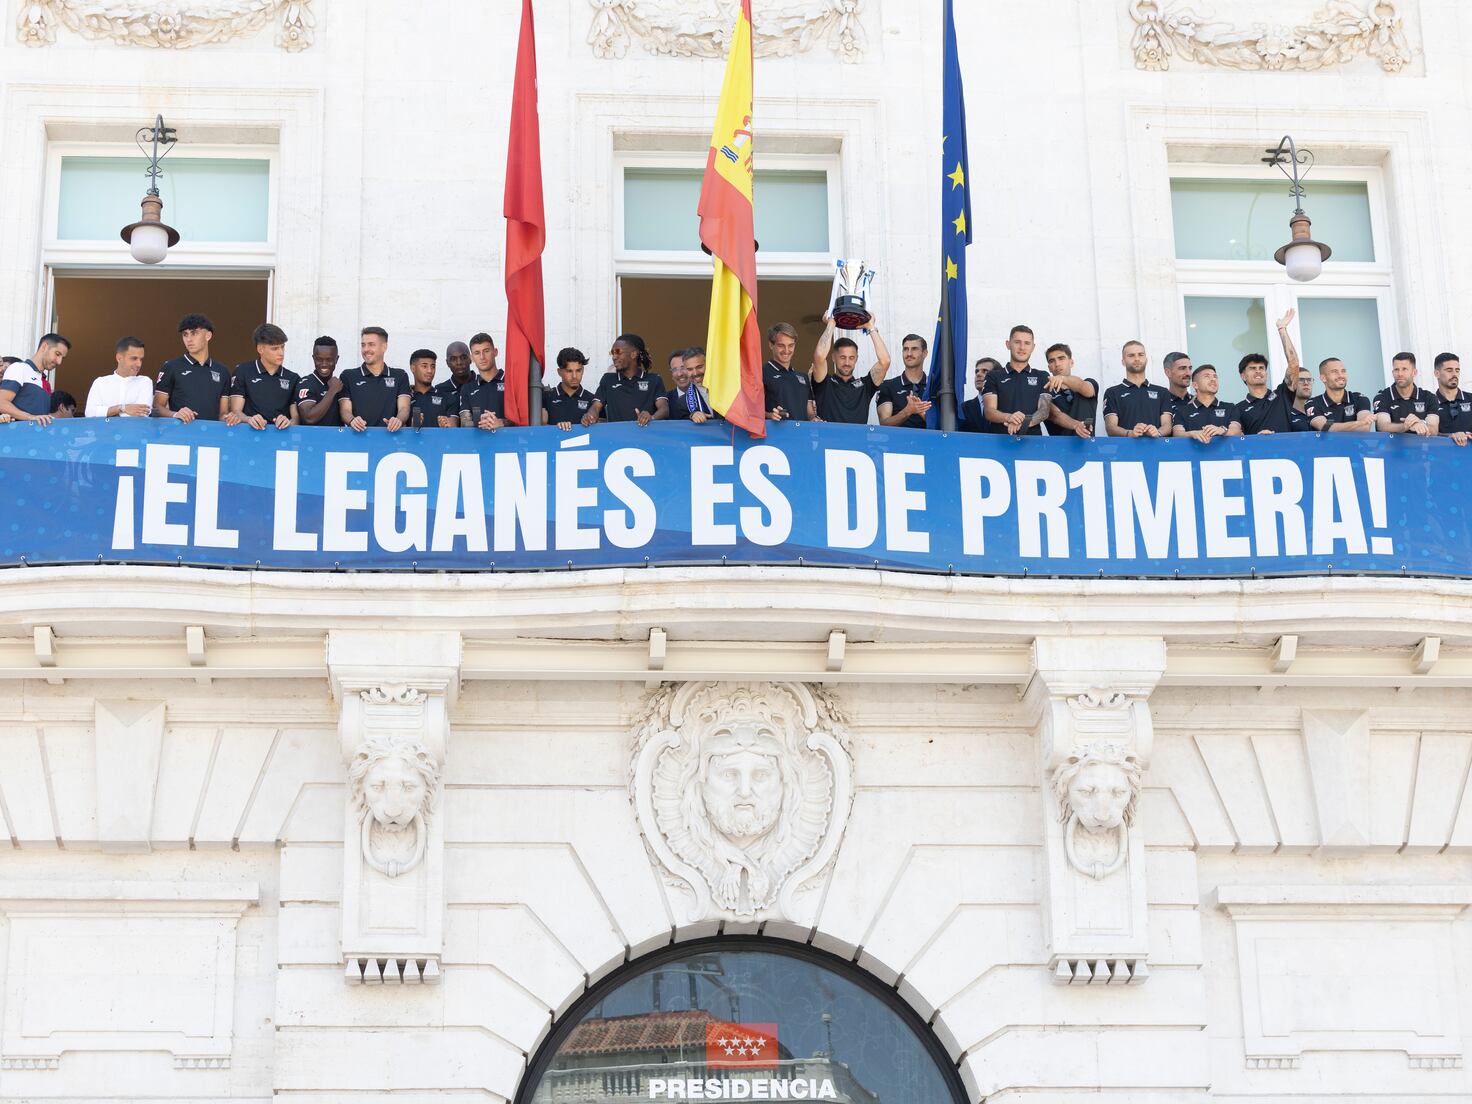 El Leganés conquista la sede de Madrid, lapsus de Ayuso incluido - AS.com